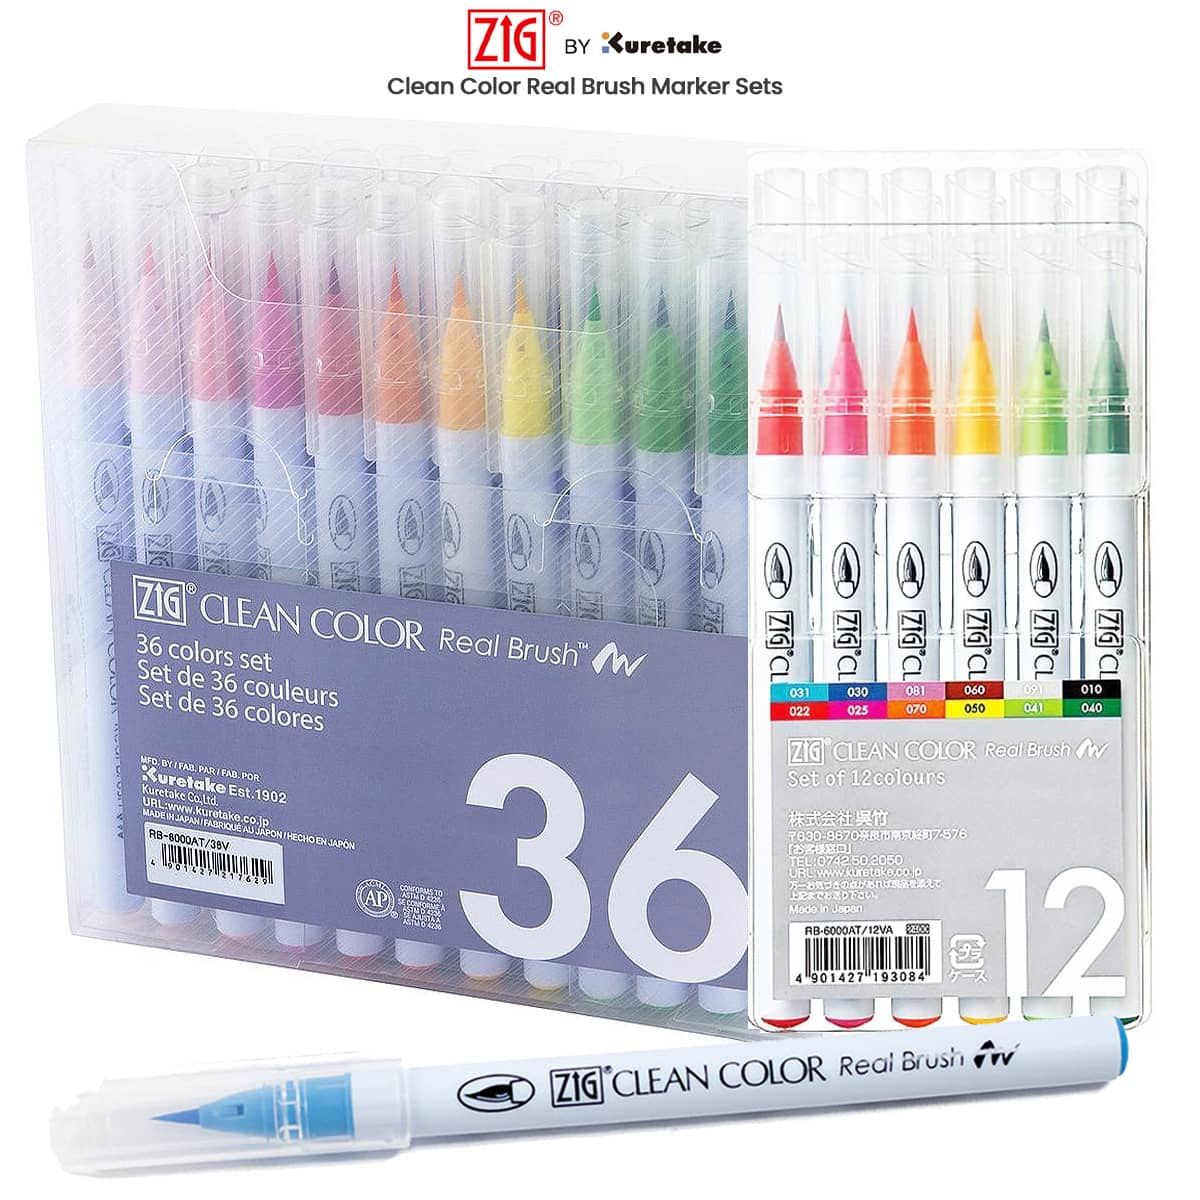 Kuretake Zig Real Brush Pen Clean Color 24 Set 24v Rb-6000at From Japan for sale online 